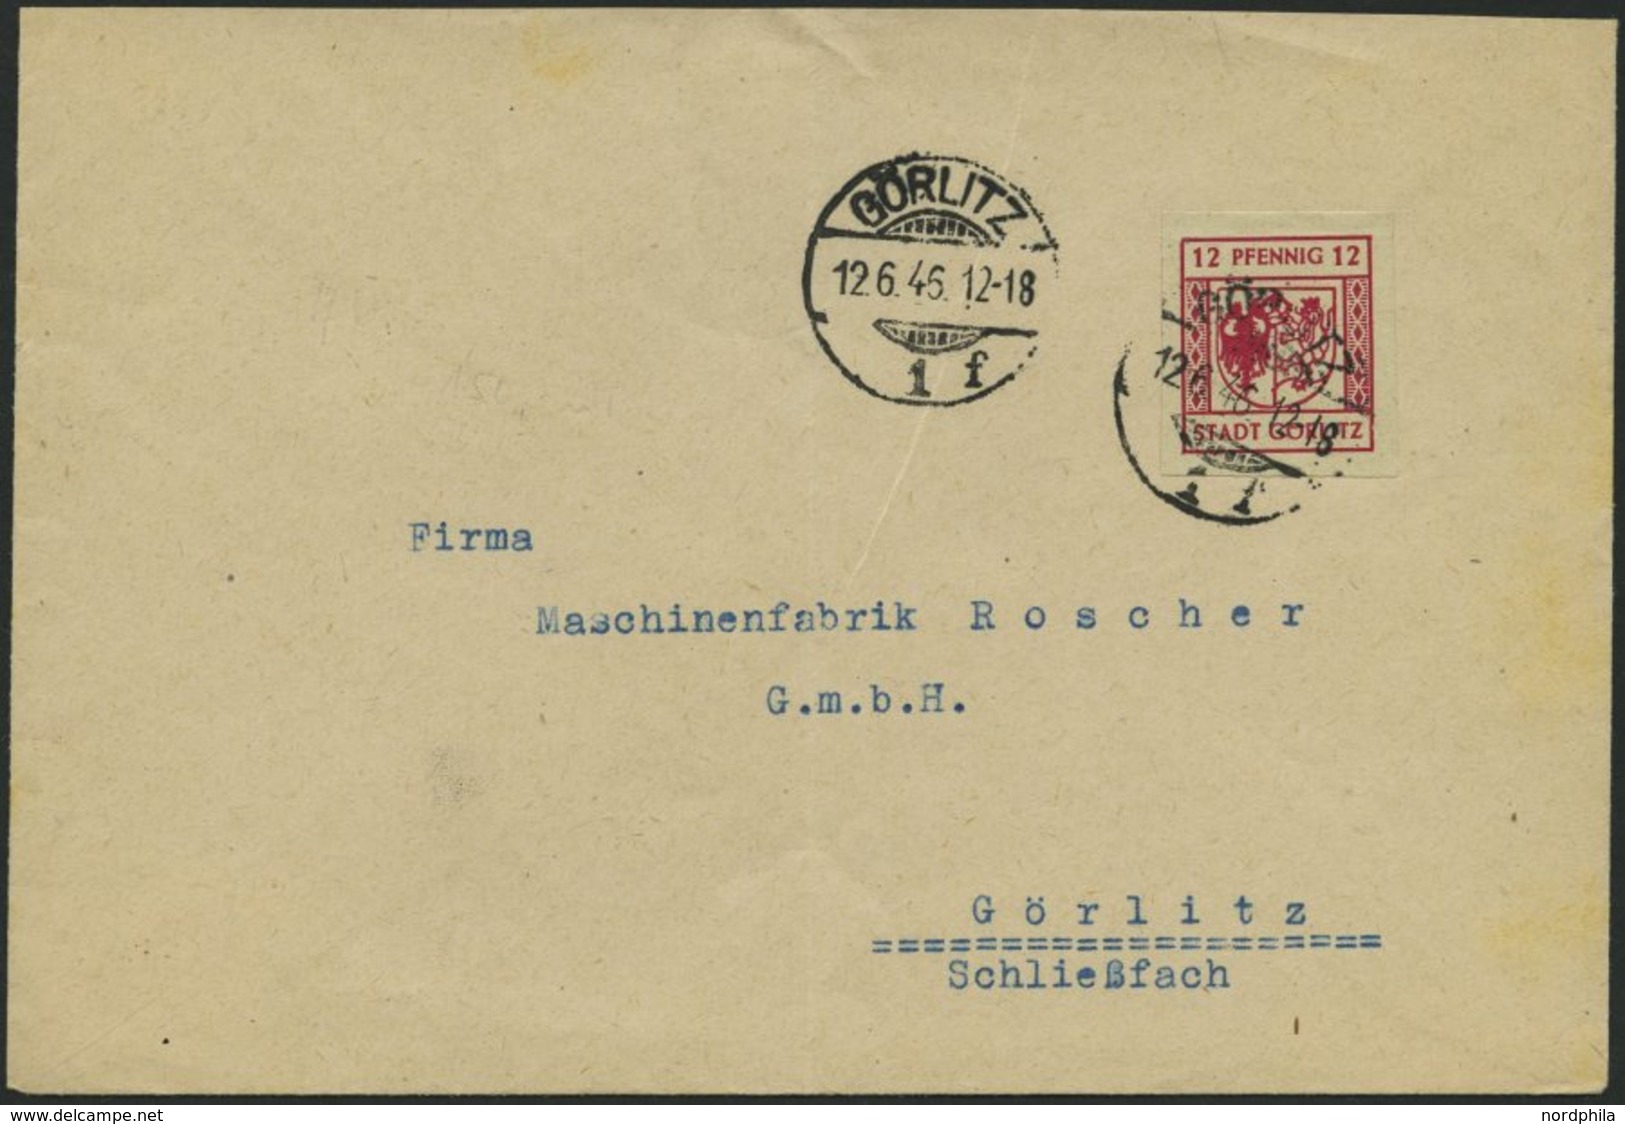 GÖRLITZ 4aU BRIEF, 1946, 12 Pf. Lilarot, Graues Papier, Ungezähnt, Prachtbrief - Privatpost